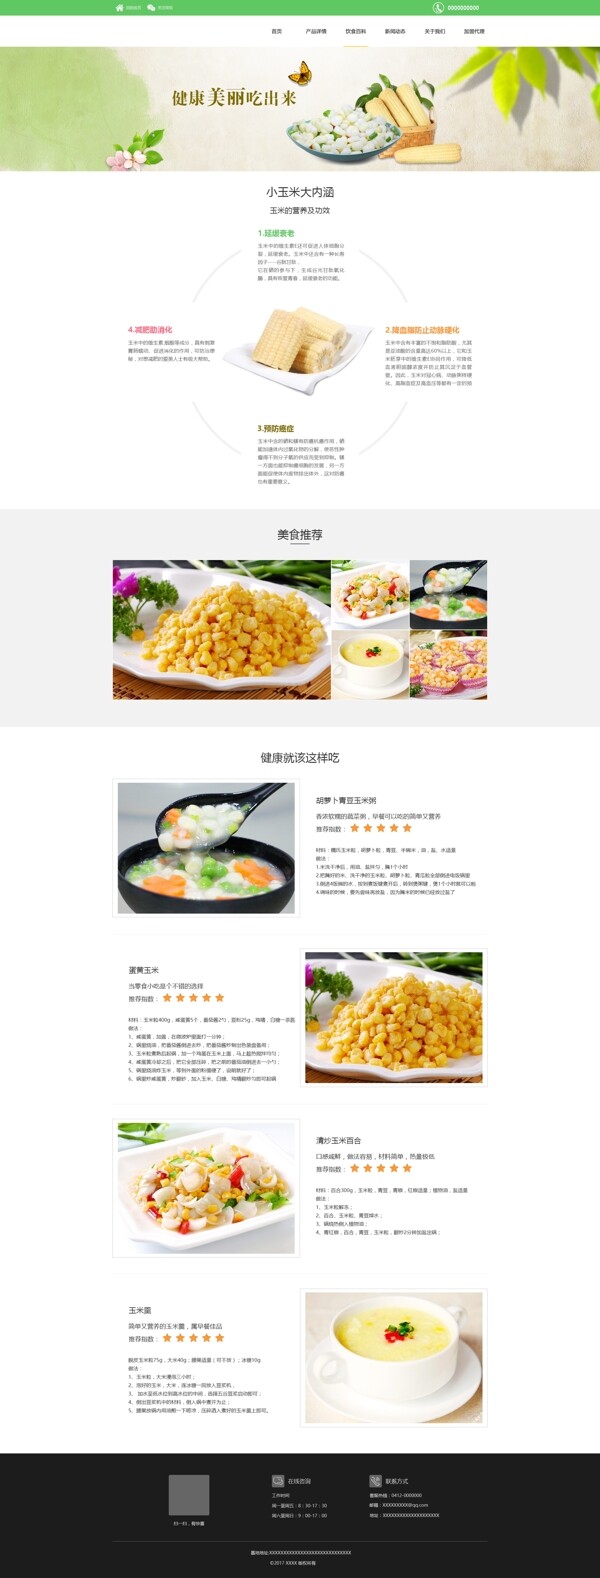 玉米粒网页设计饮食百科